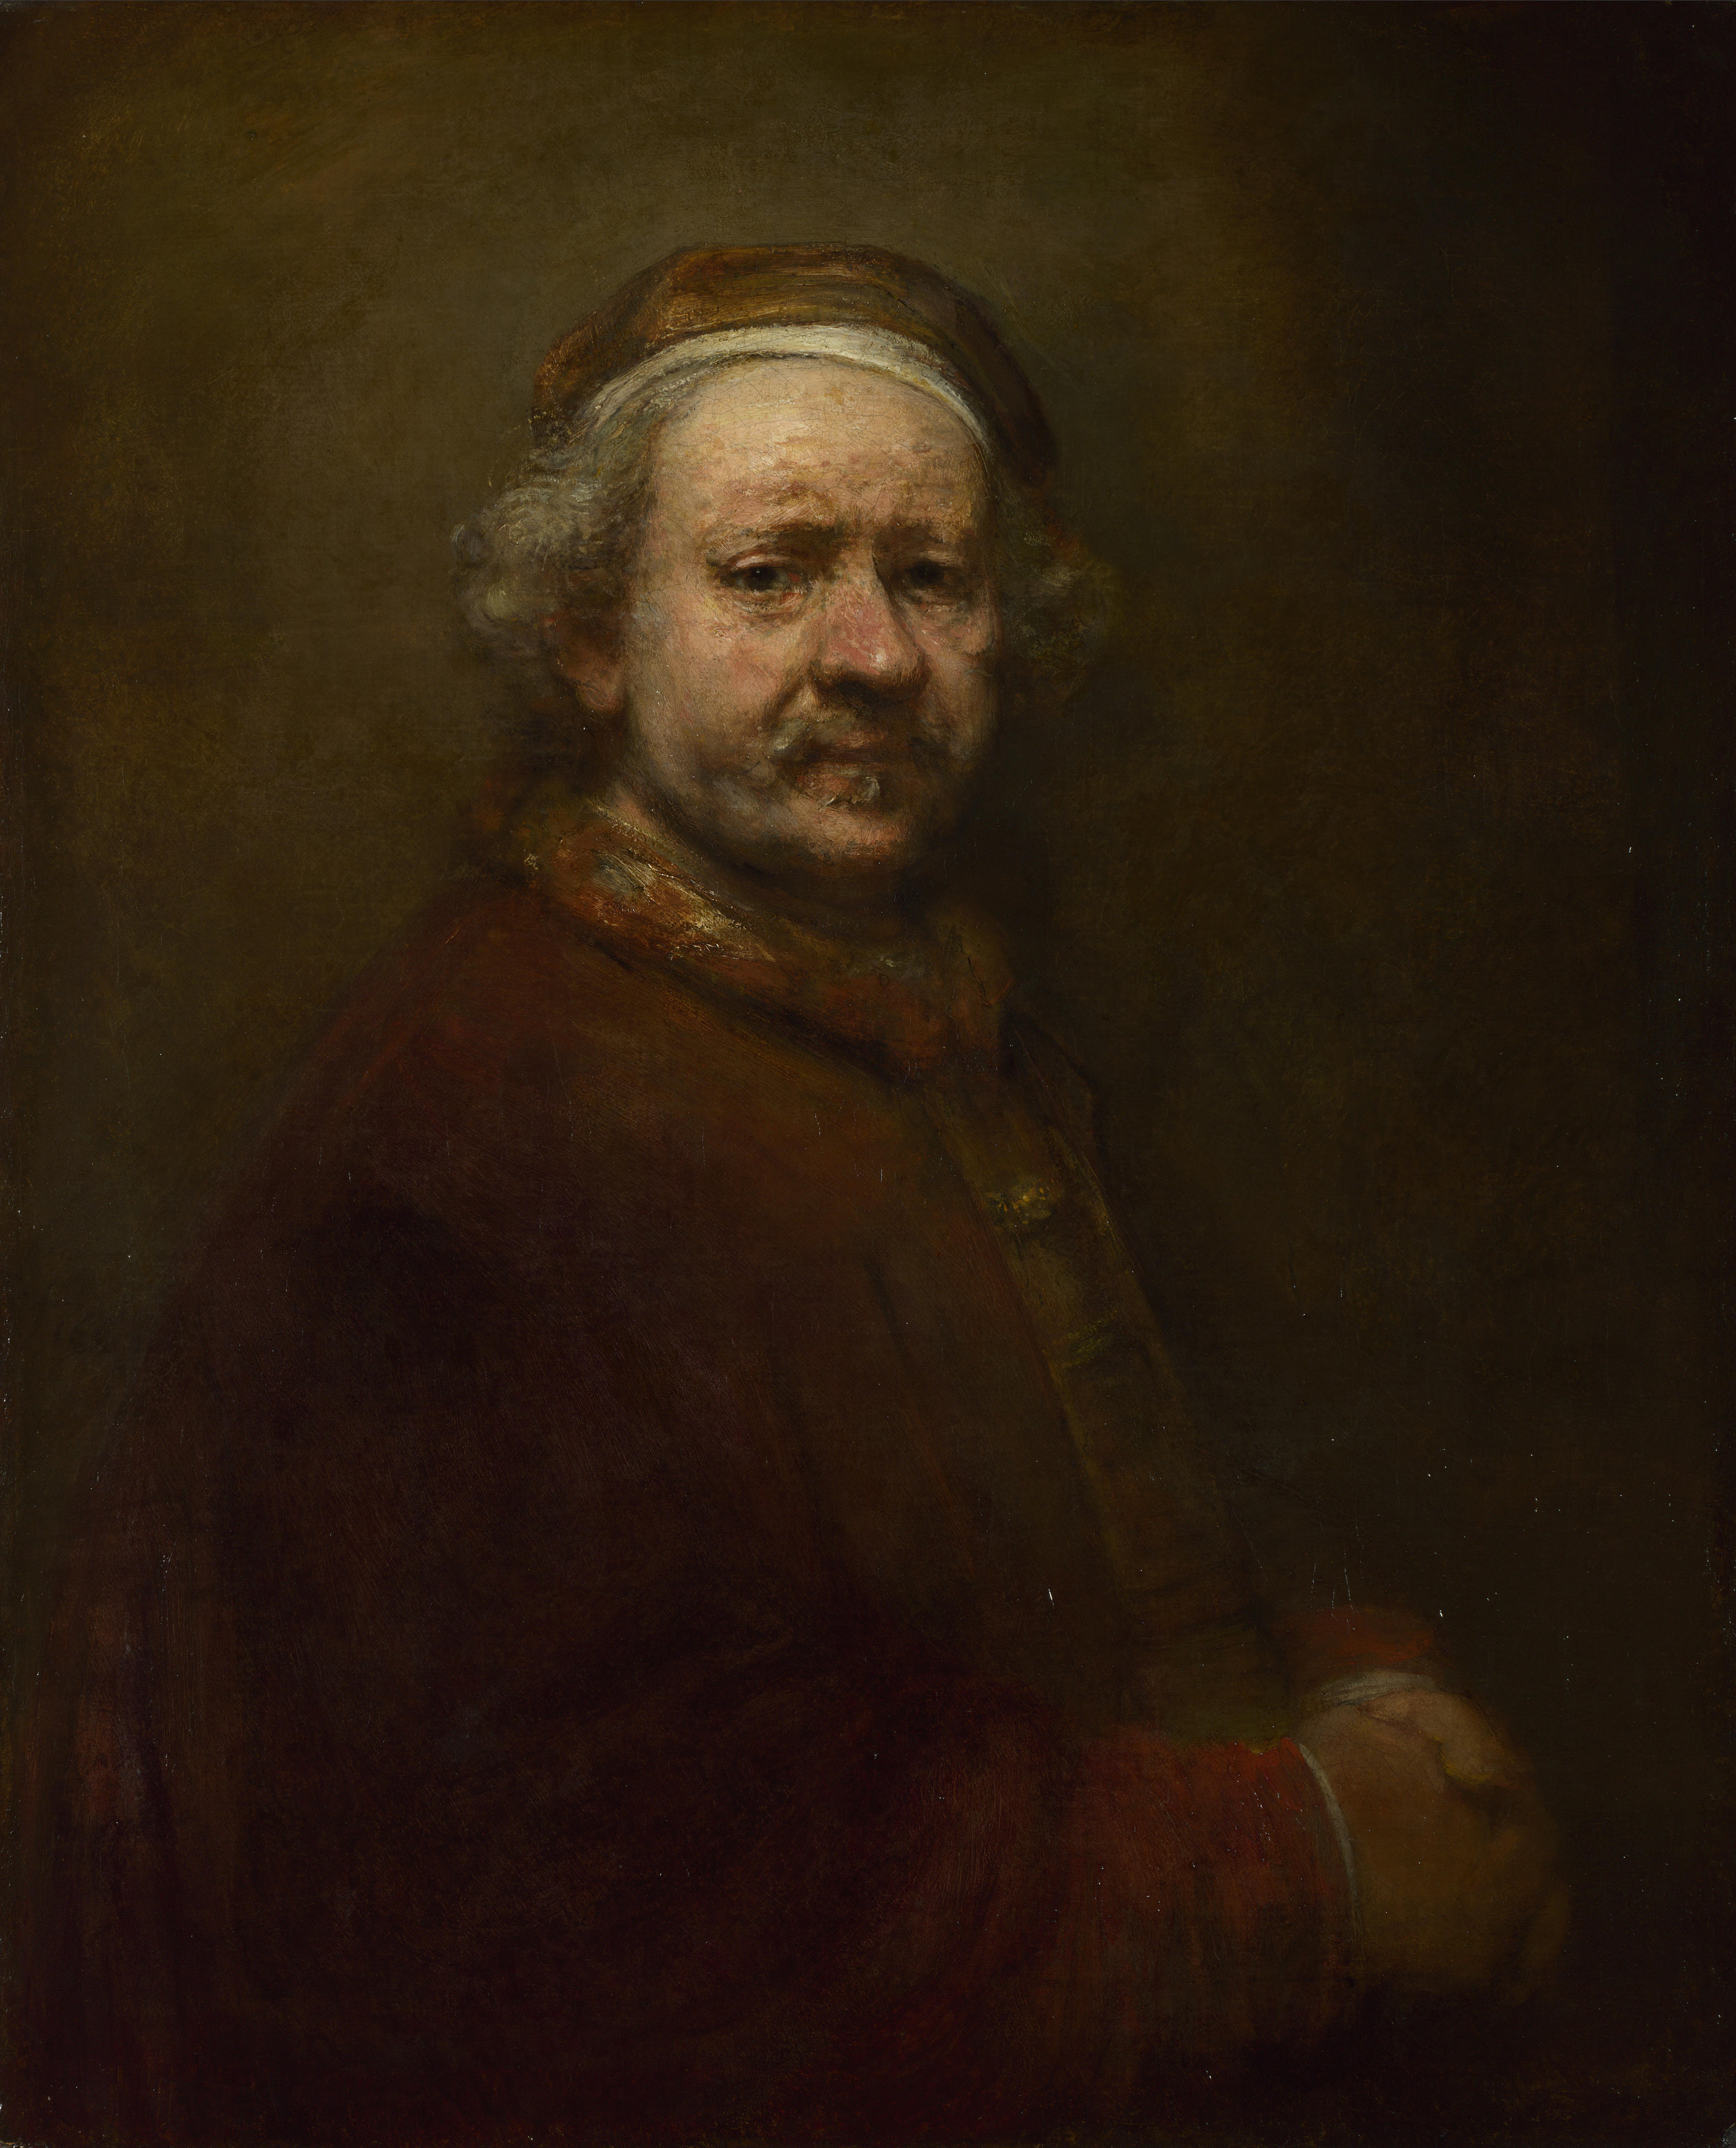 Autorretrato by Rembrandt van Rijn - 1669 - 86 x 70.5 cm Galería Nacional